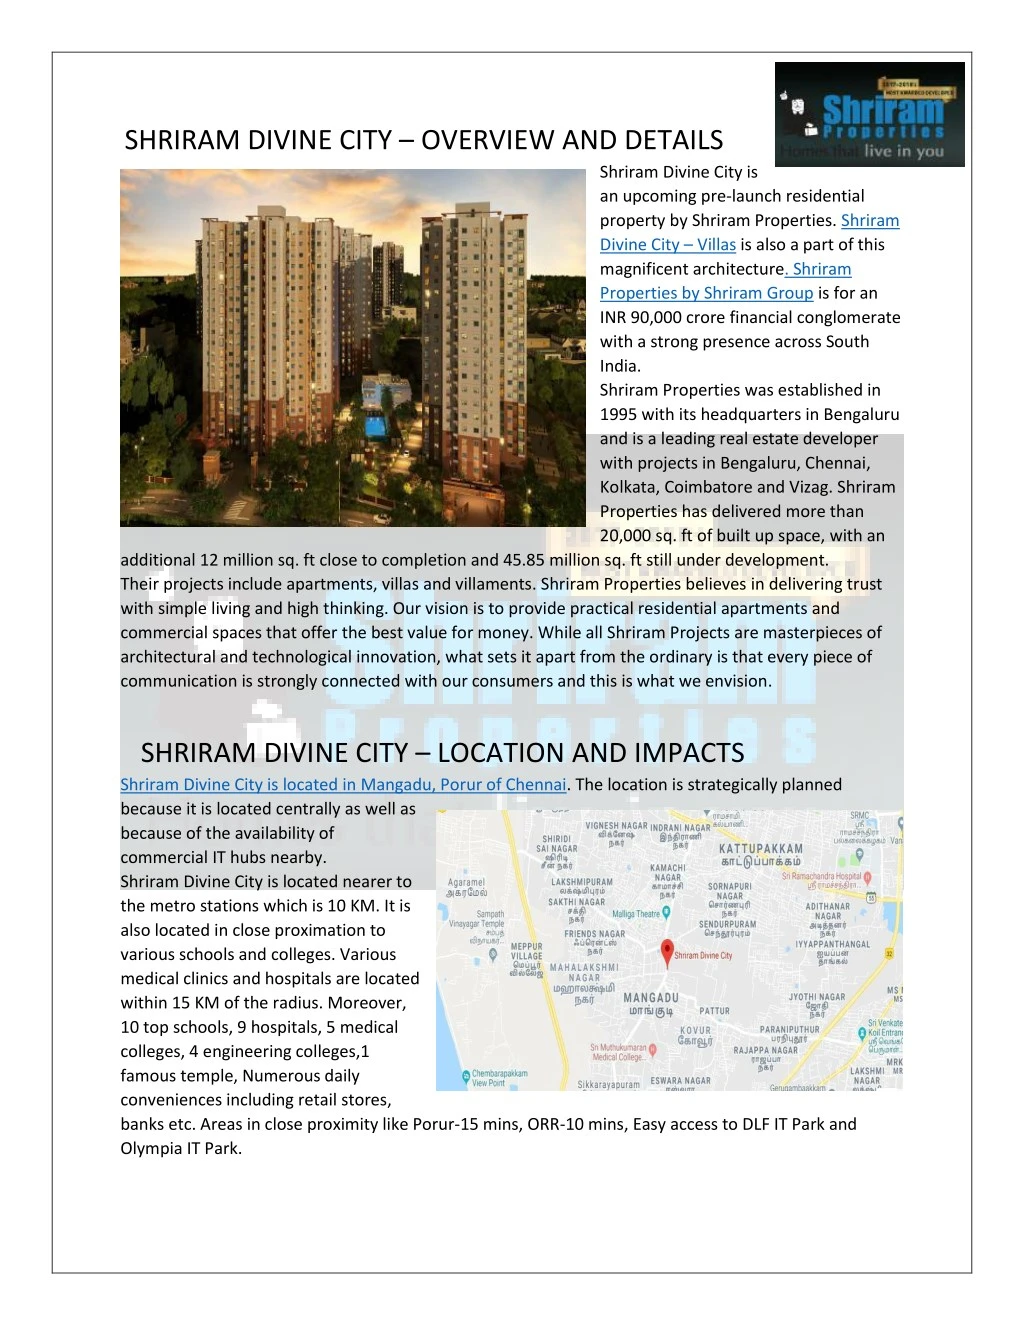 shriram divine city overview and details